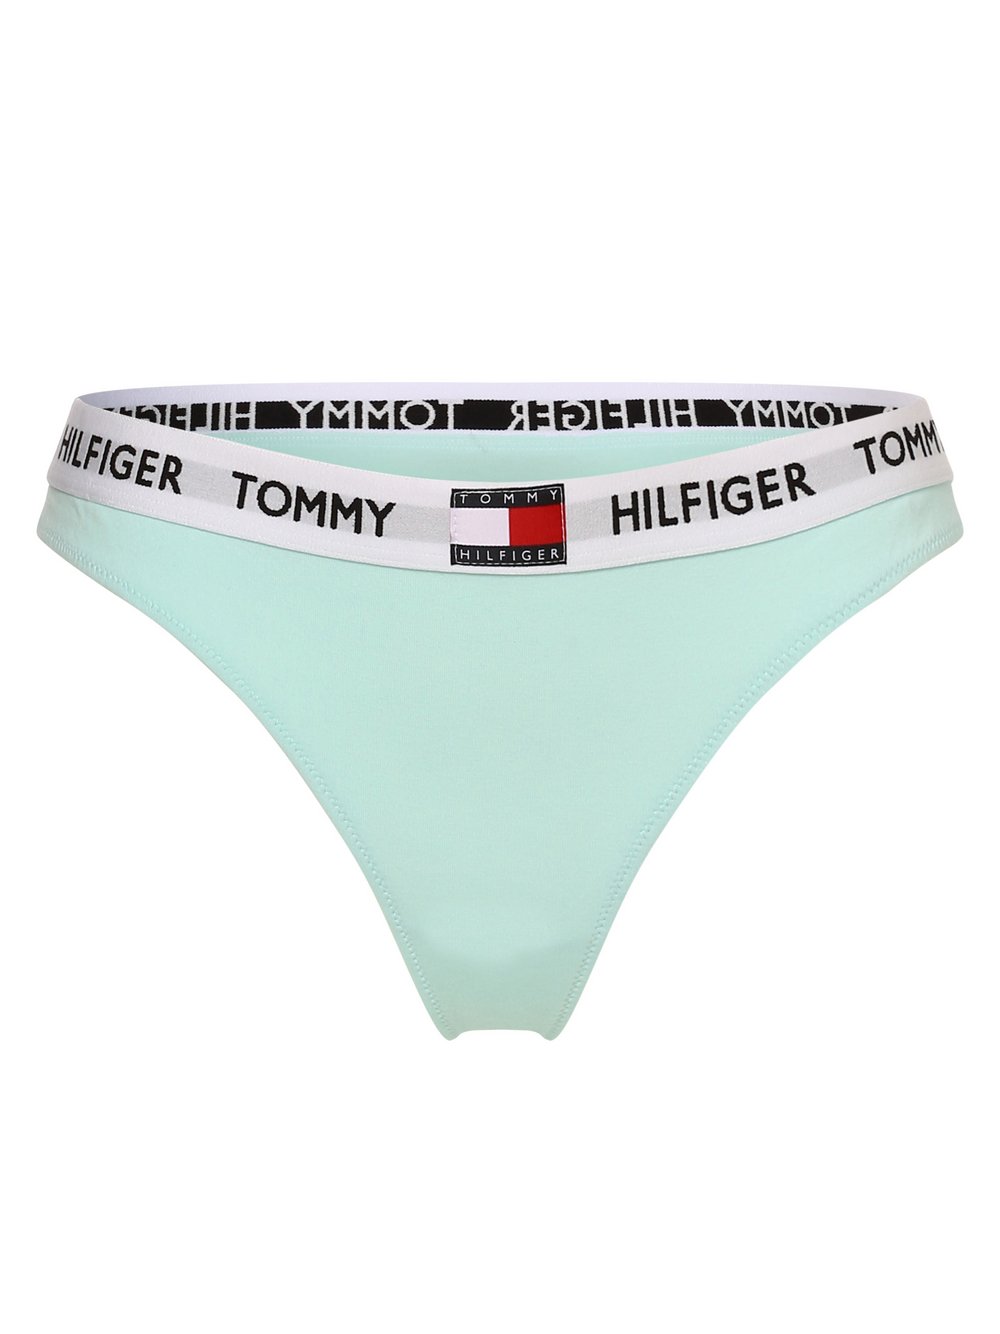 Tommy Hilfiger - Stringi damskie, niebieski|zielony